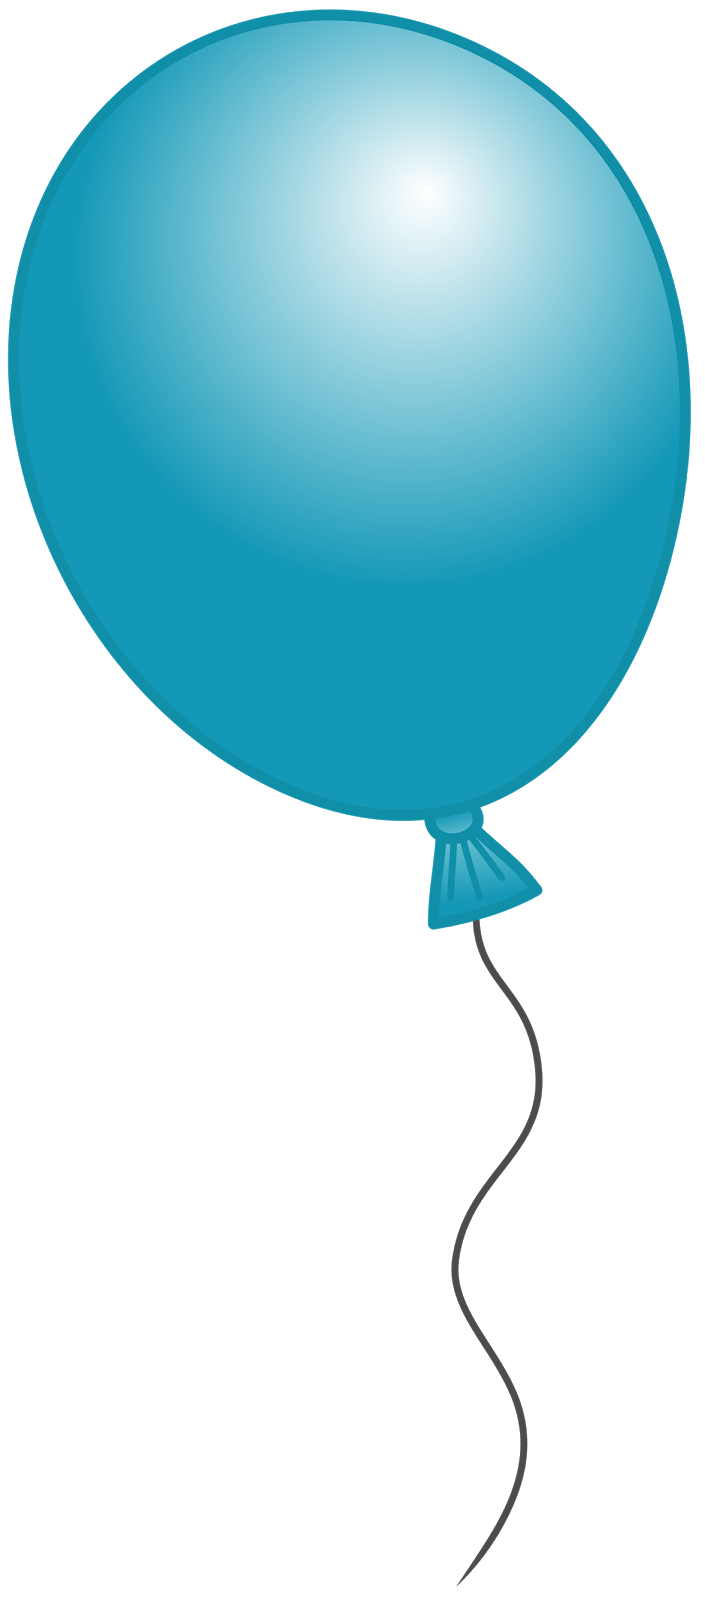 Clipart ballon